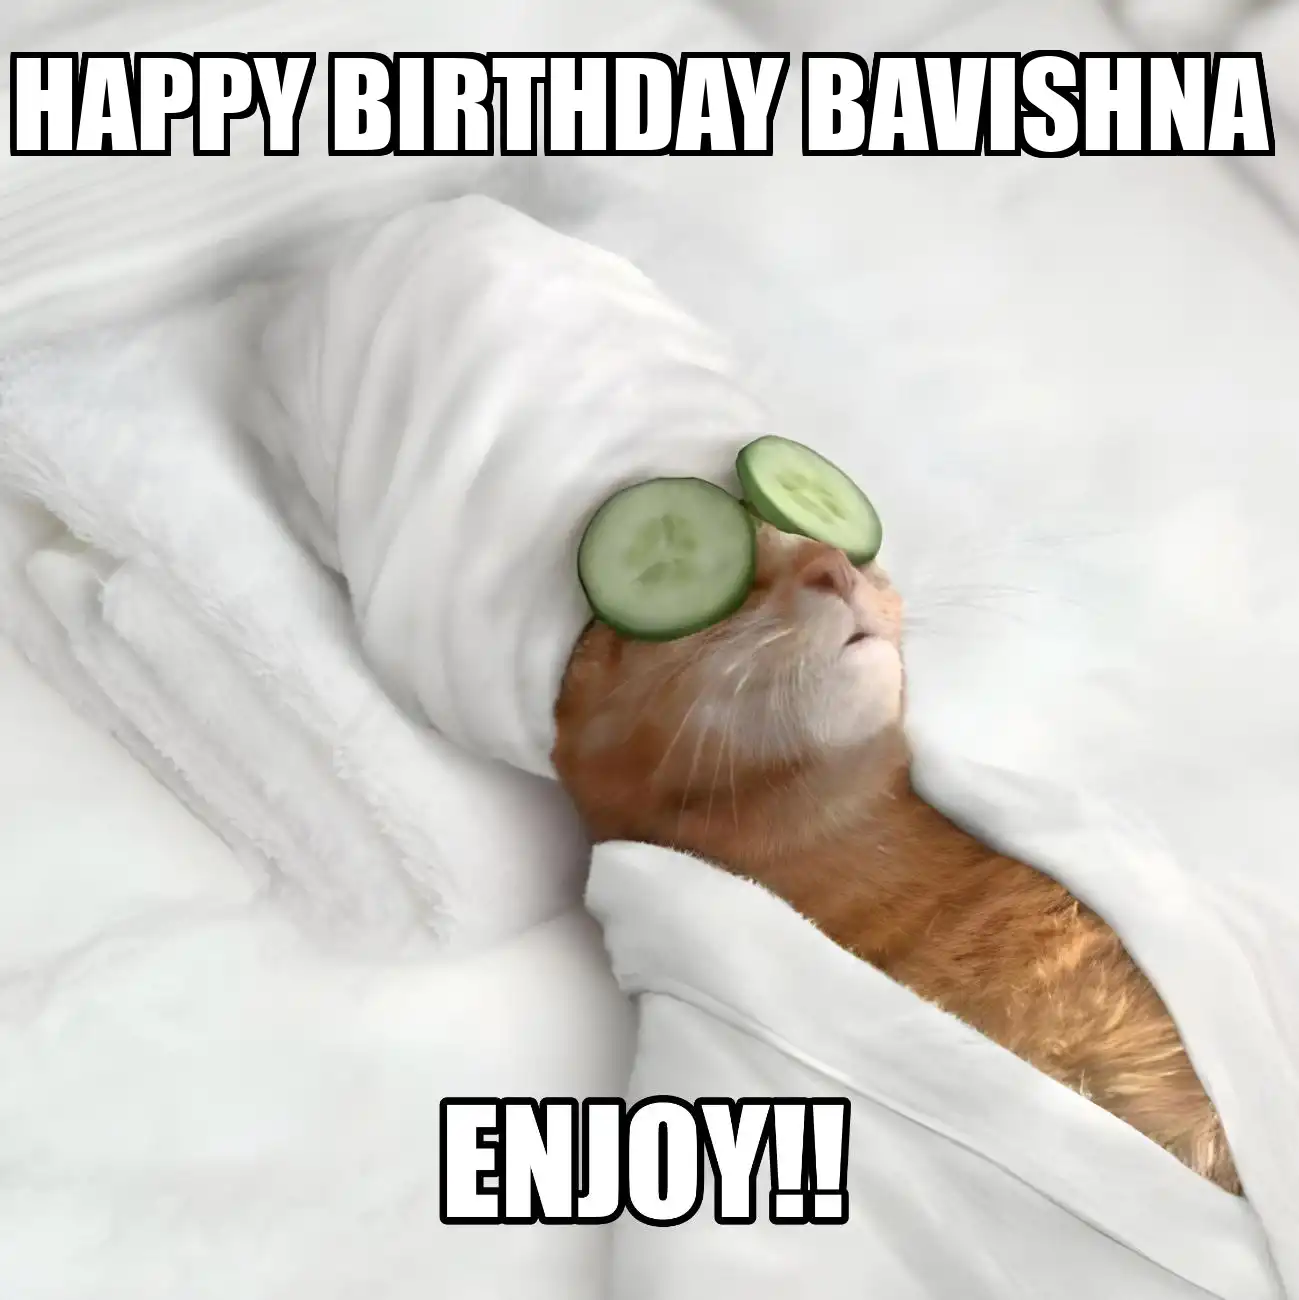 Happy Birthday Bavishna Enjoy Cat Meme